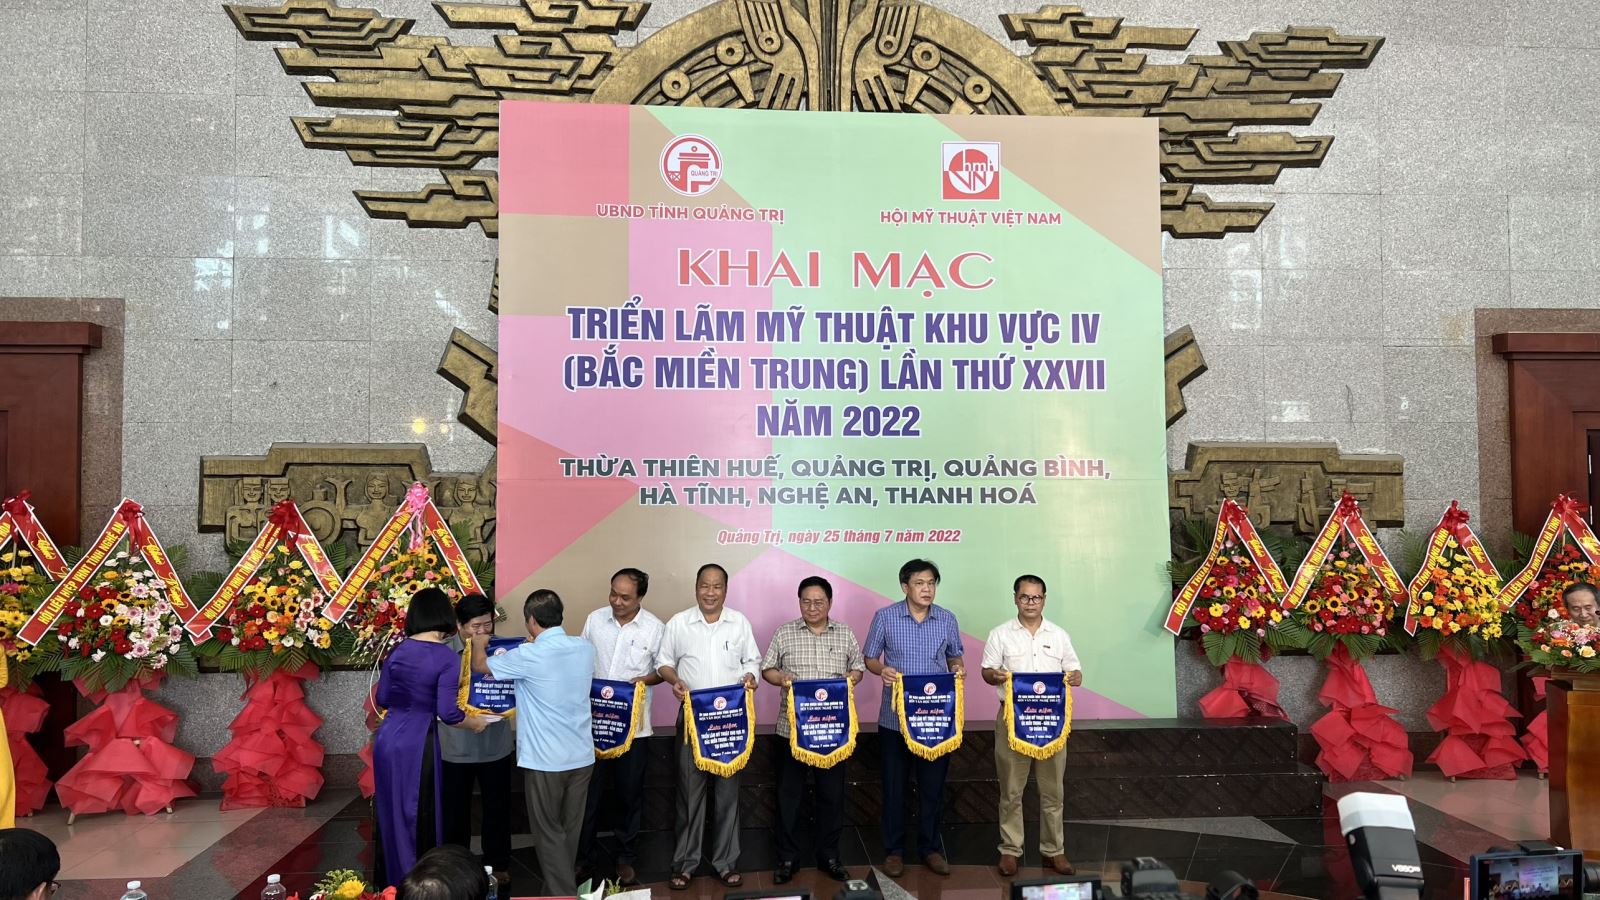 Triển lãm Mỹ thuật khu vực IV lần thứ 27 năm 2022 tại Quảng Trị